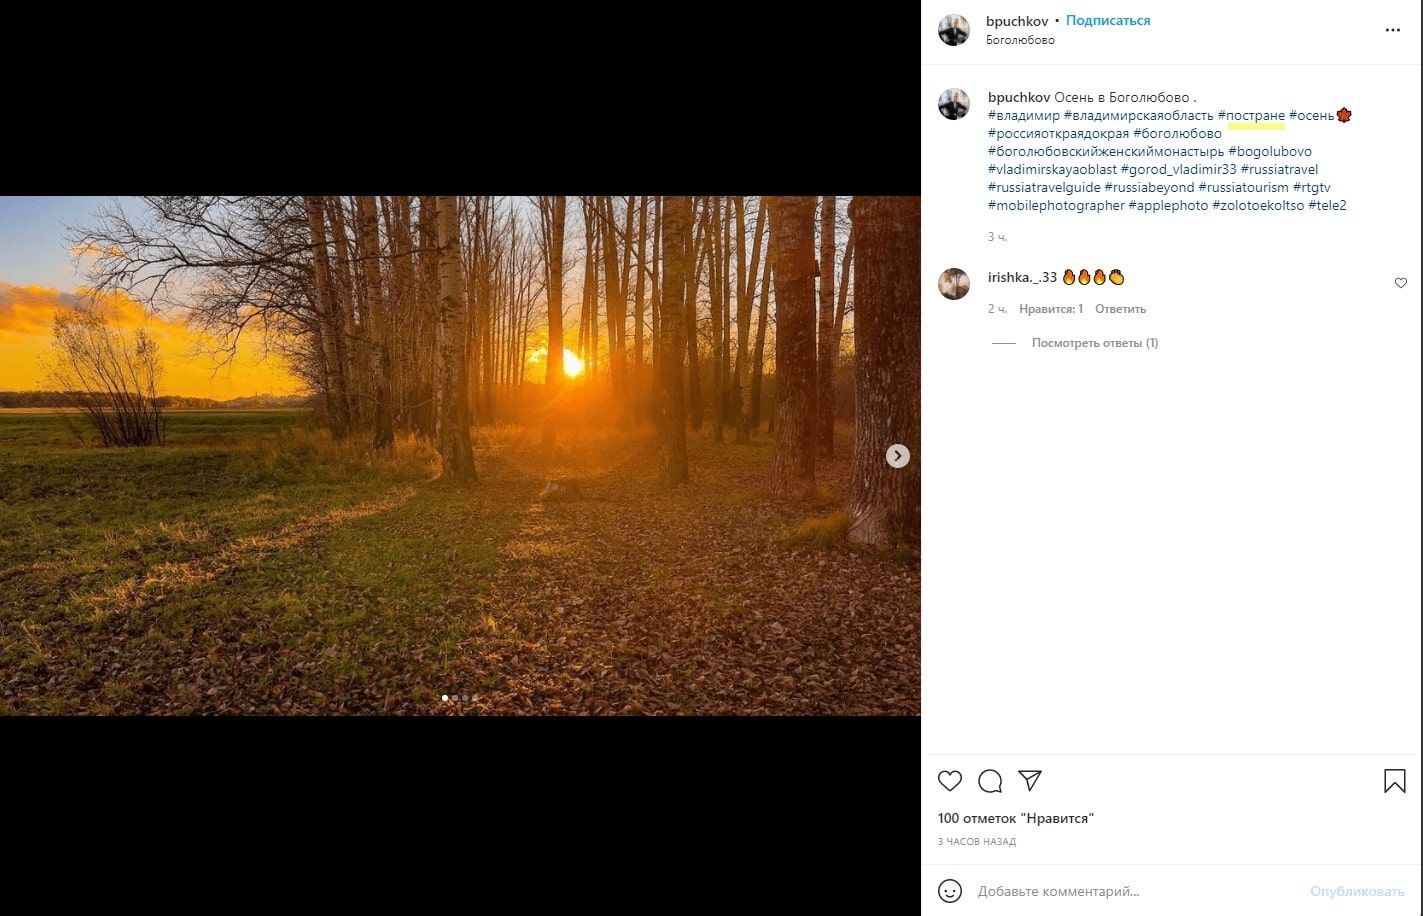 Фото закатного солнца почти также популярно в Инстаграме*, как некоторые блогеры